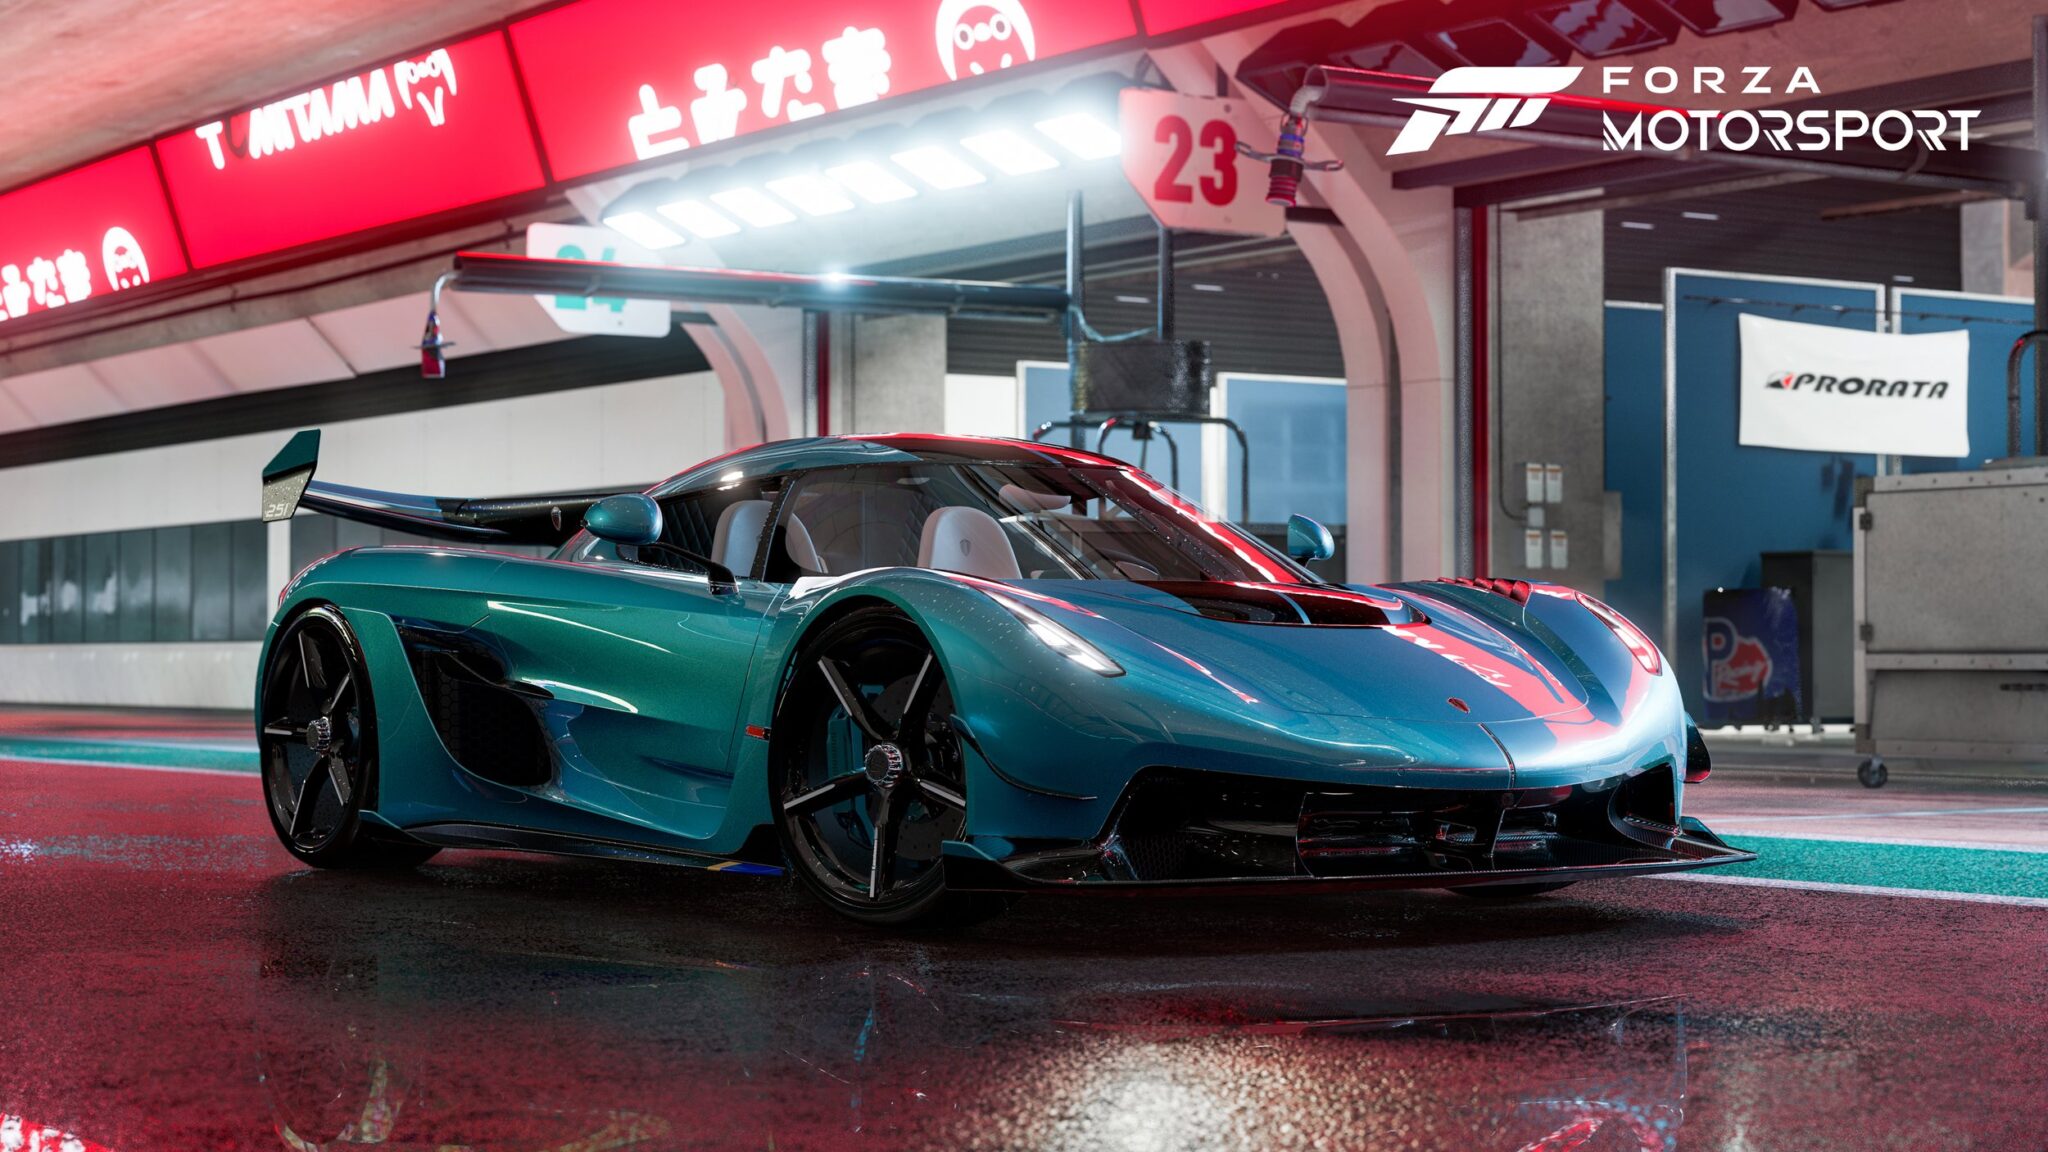 Kurzer Forza Motorsport-Trailer zeigt die wunderschöne Hakone-Rennstrecke in Japan